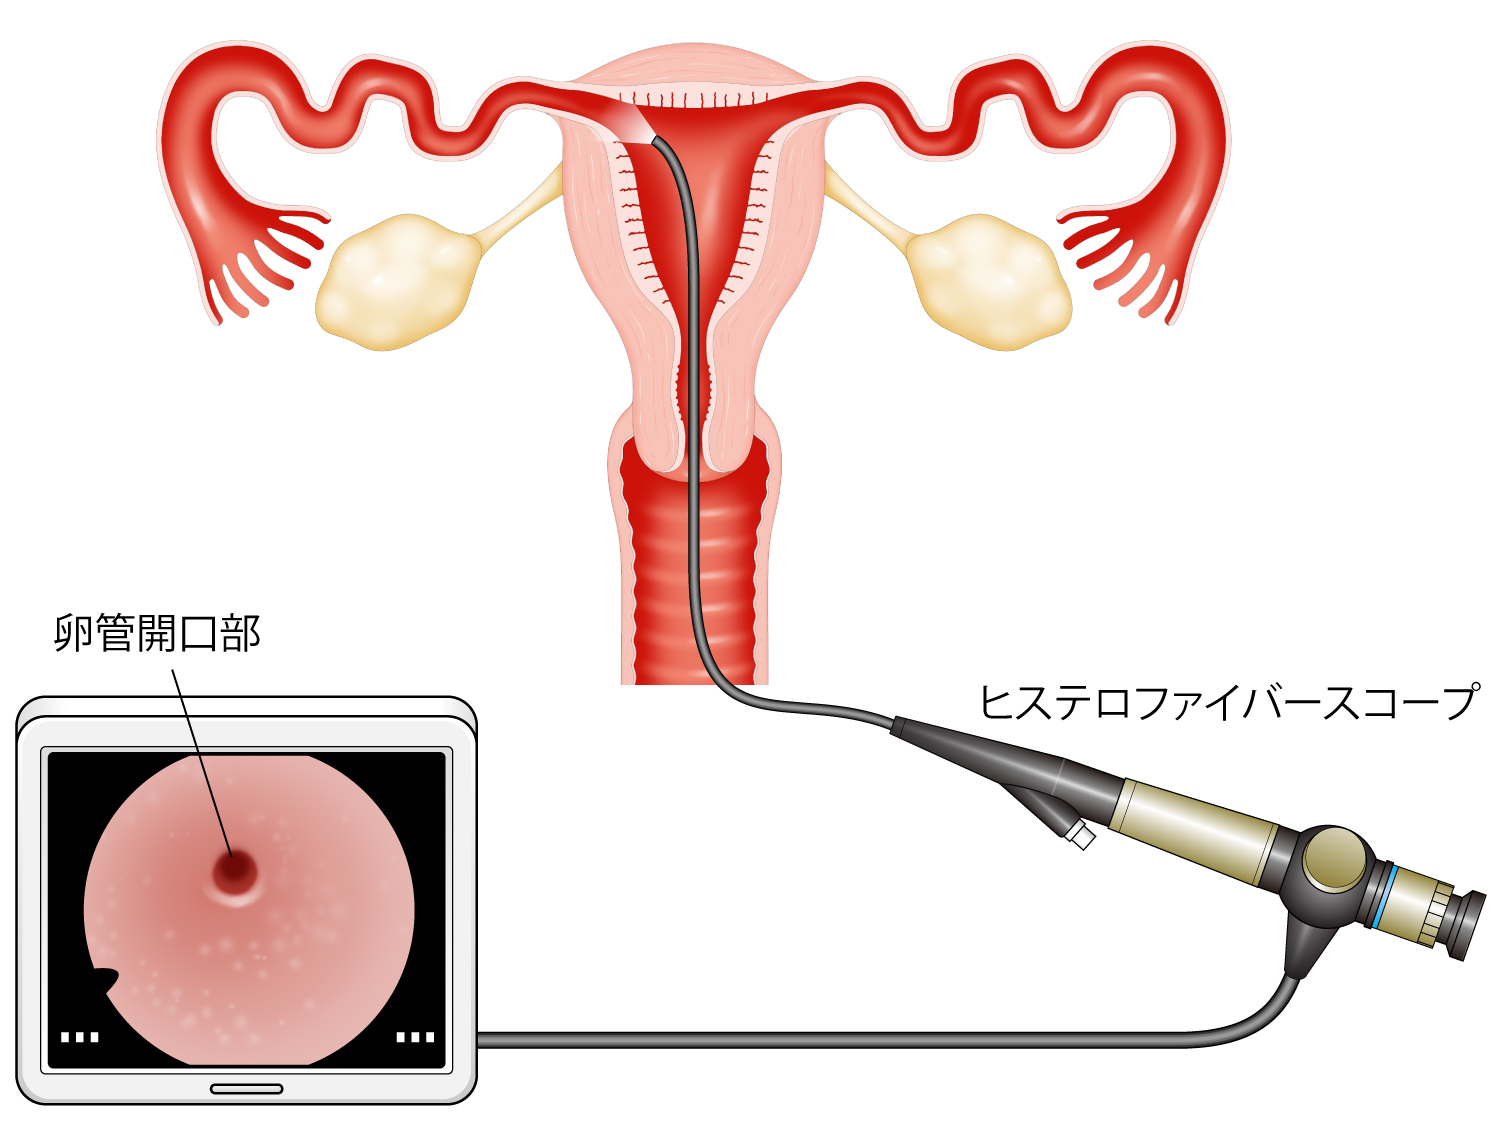 子宮鏡検査の図